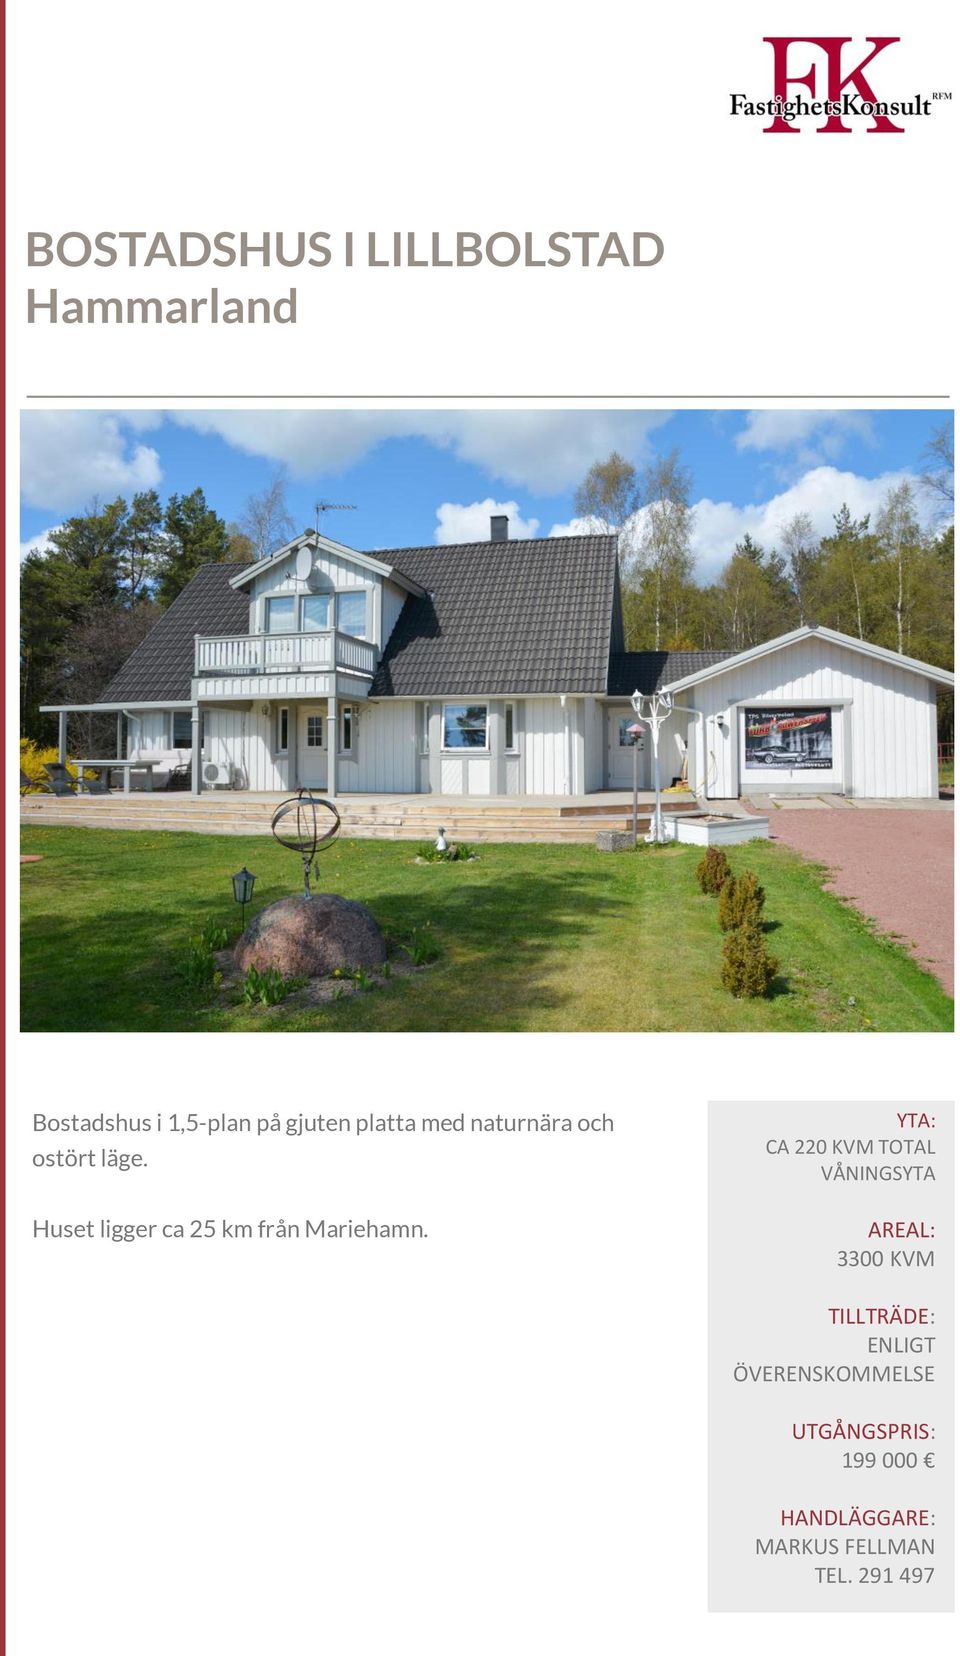 Huset ligger ca 25 km från Mariehamn.